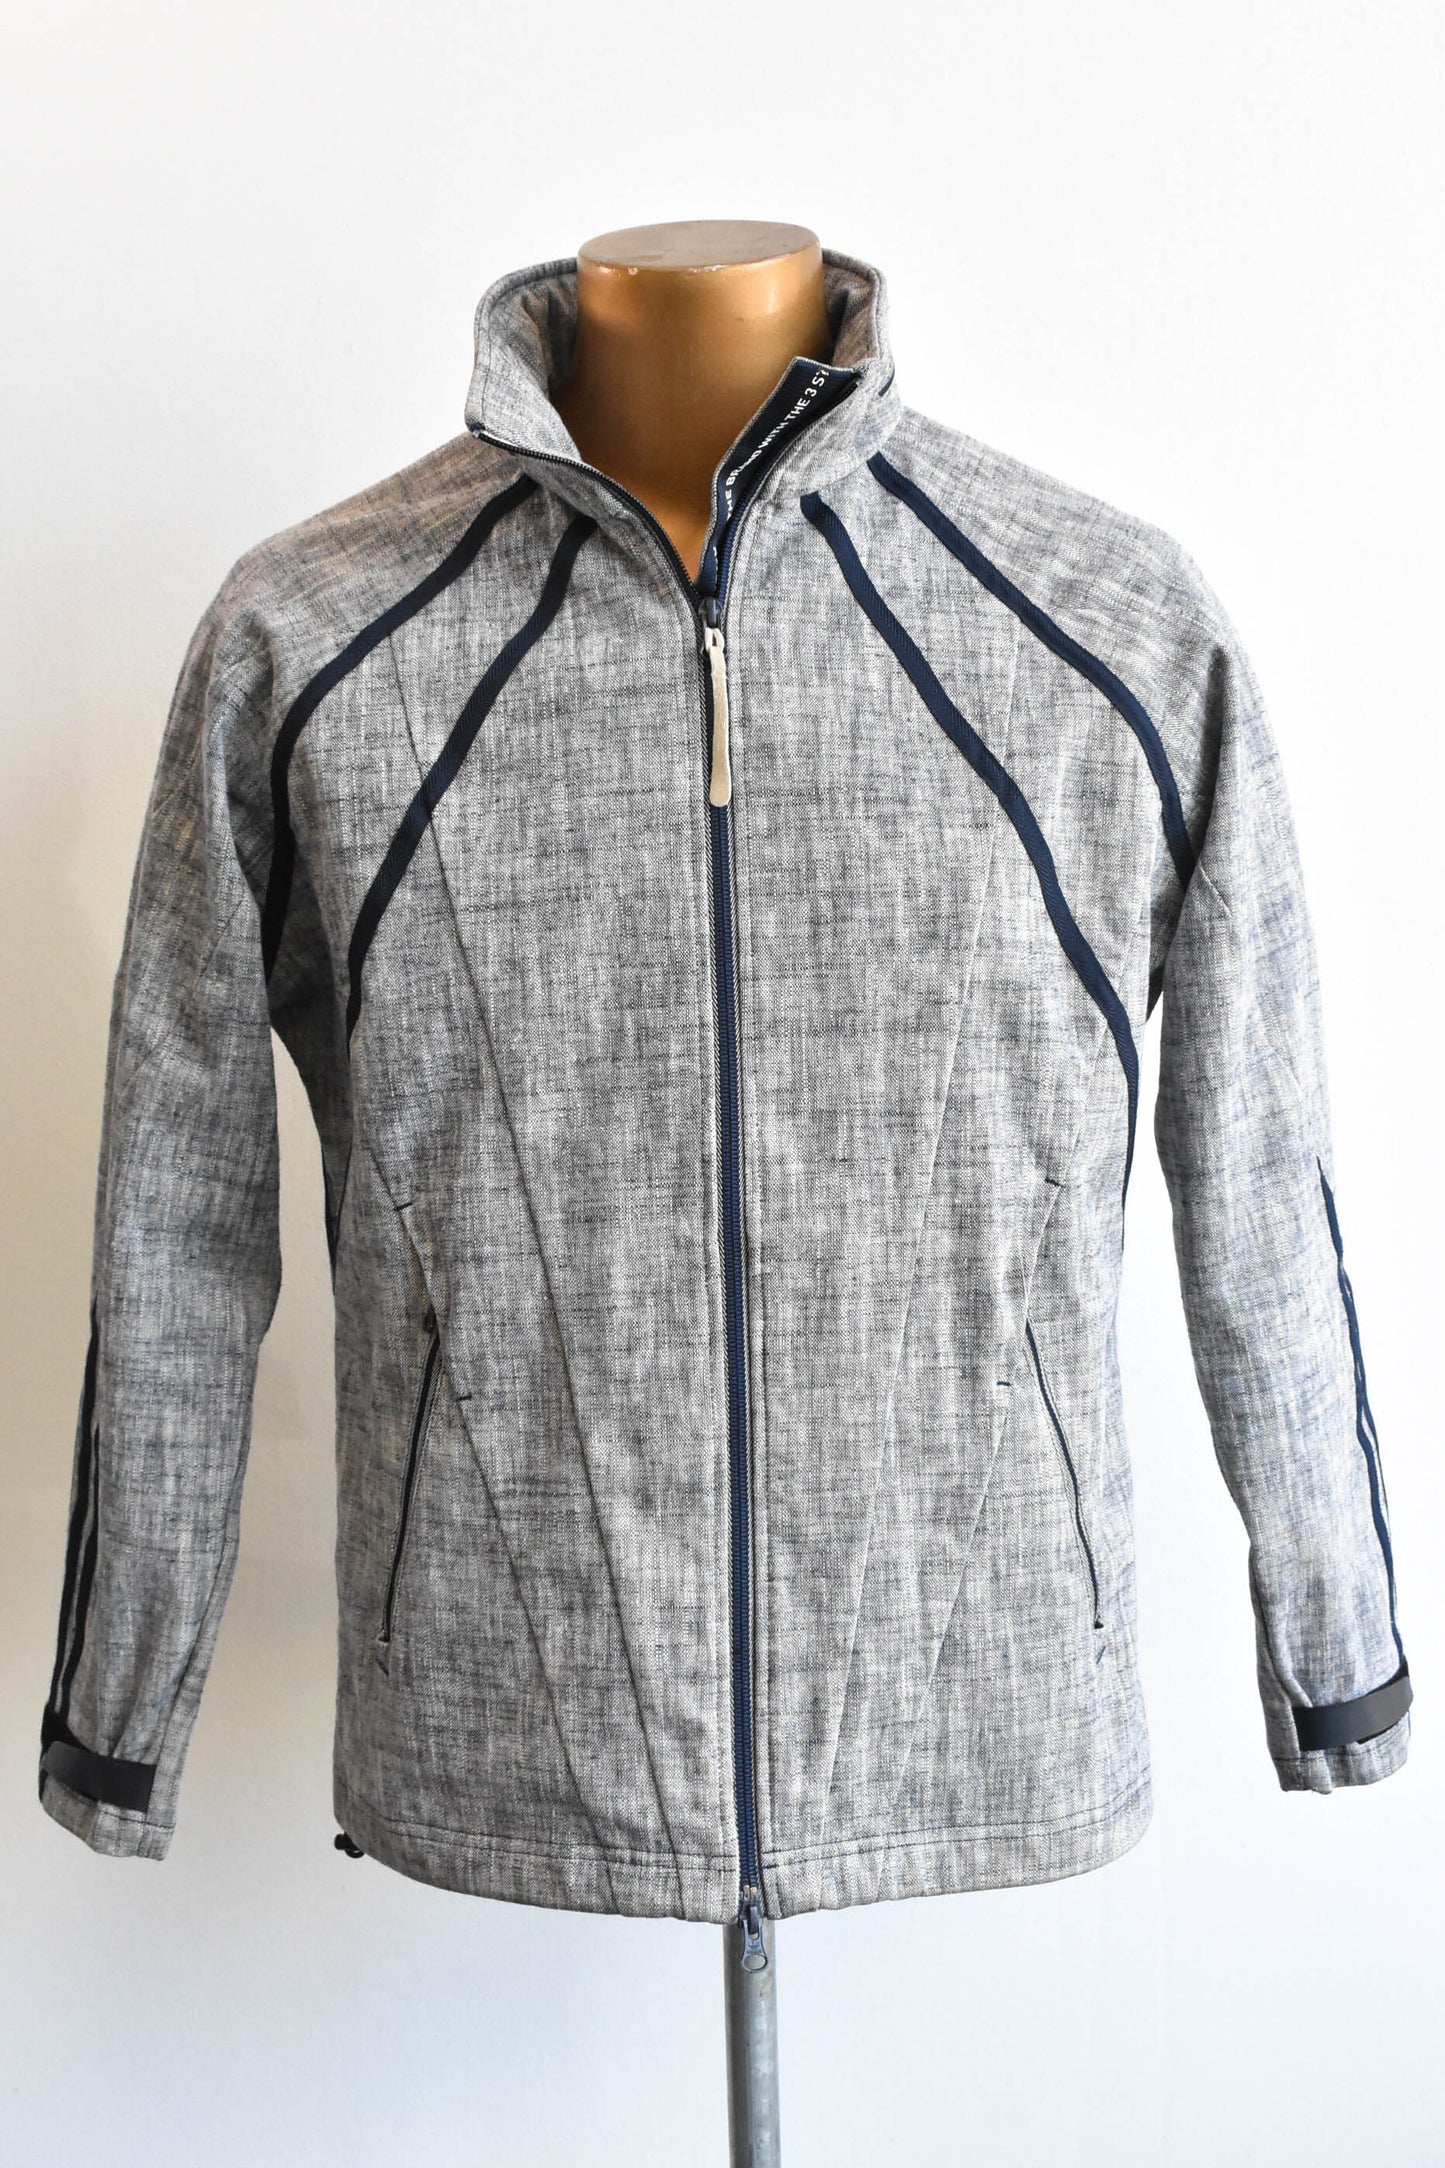 Adidas grey jacket, size S